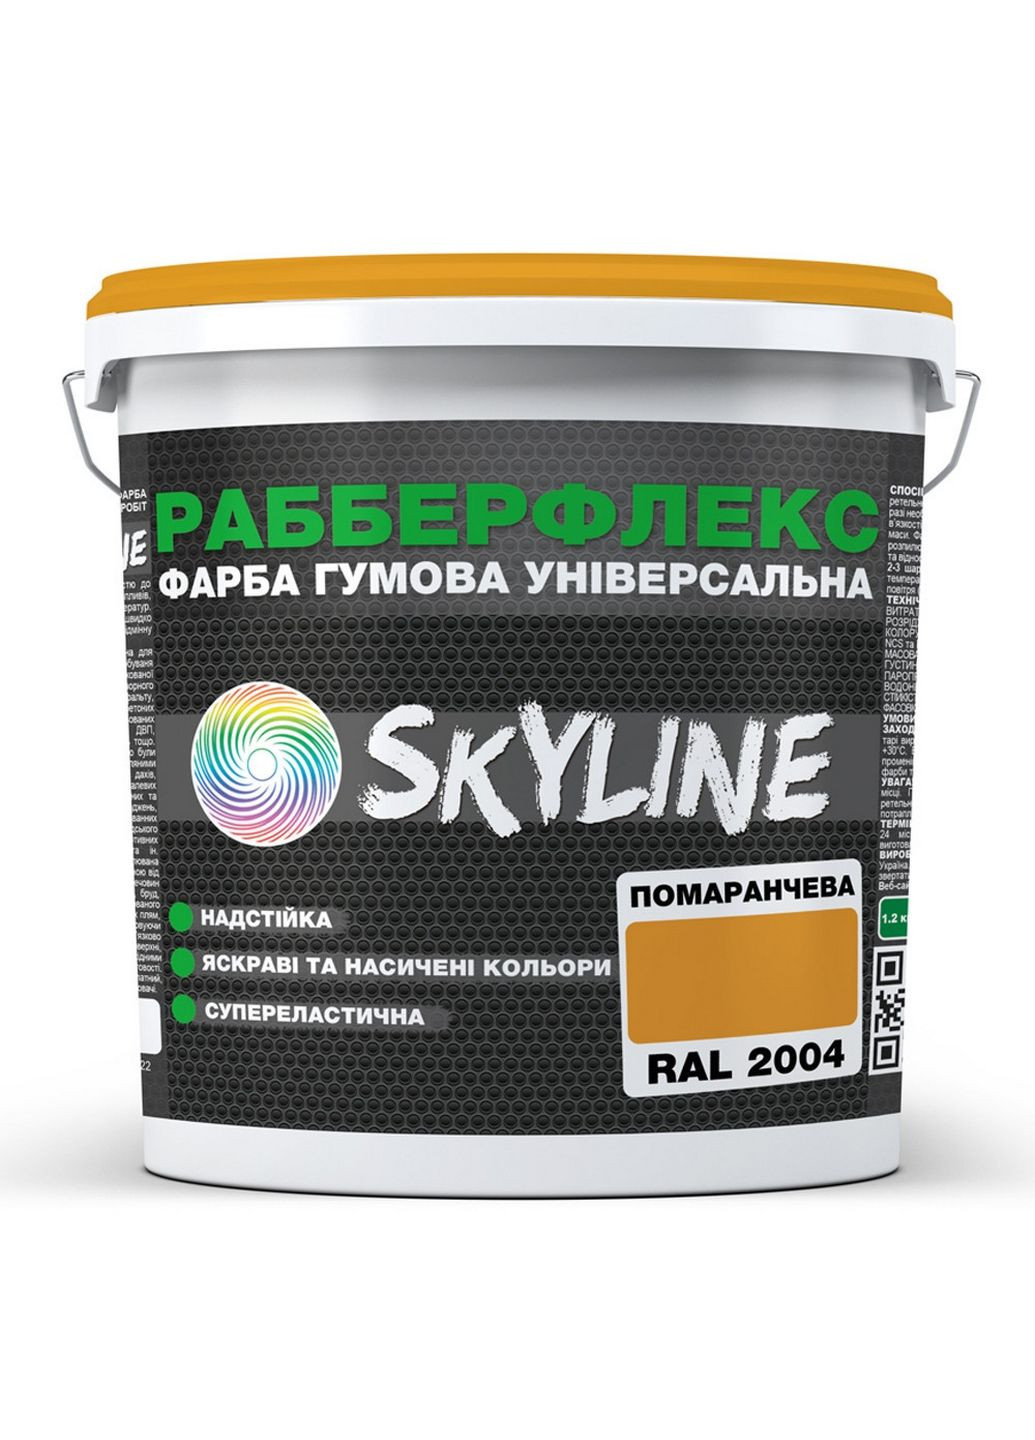 Краска резиновая суперэластичная сверхстойкая «РабберФлекс» 12 кг SkyLine (289363695)